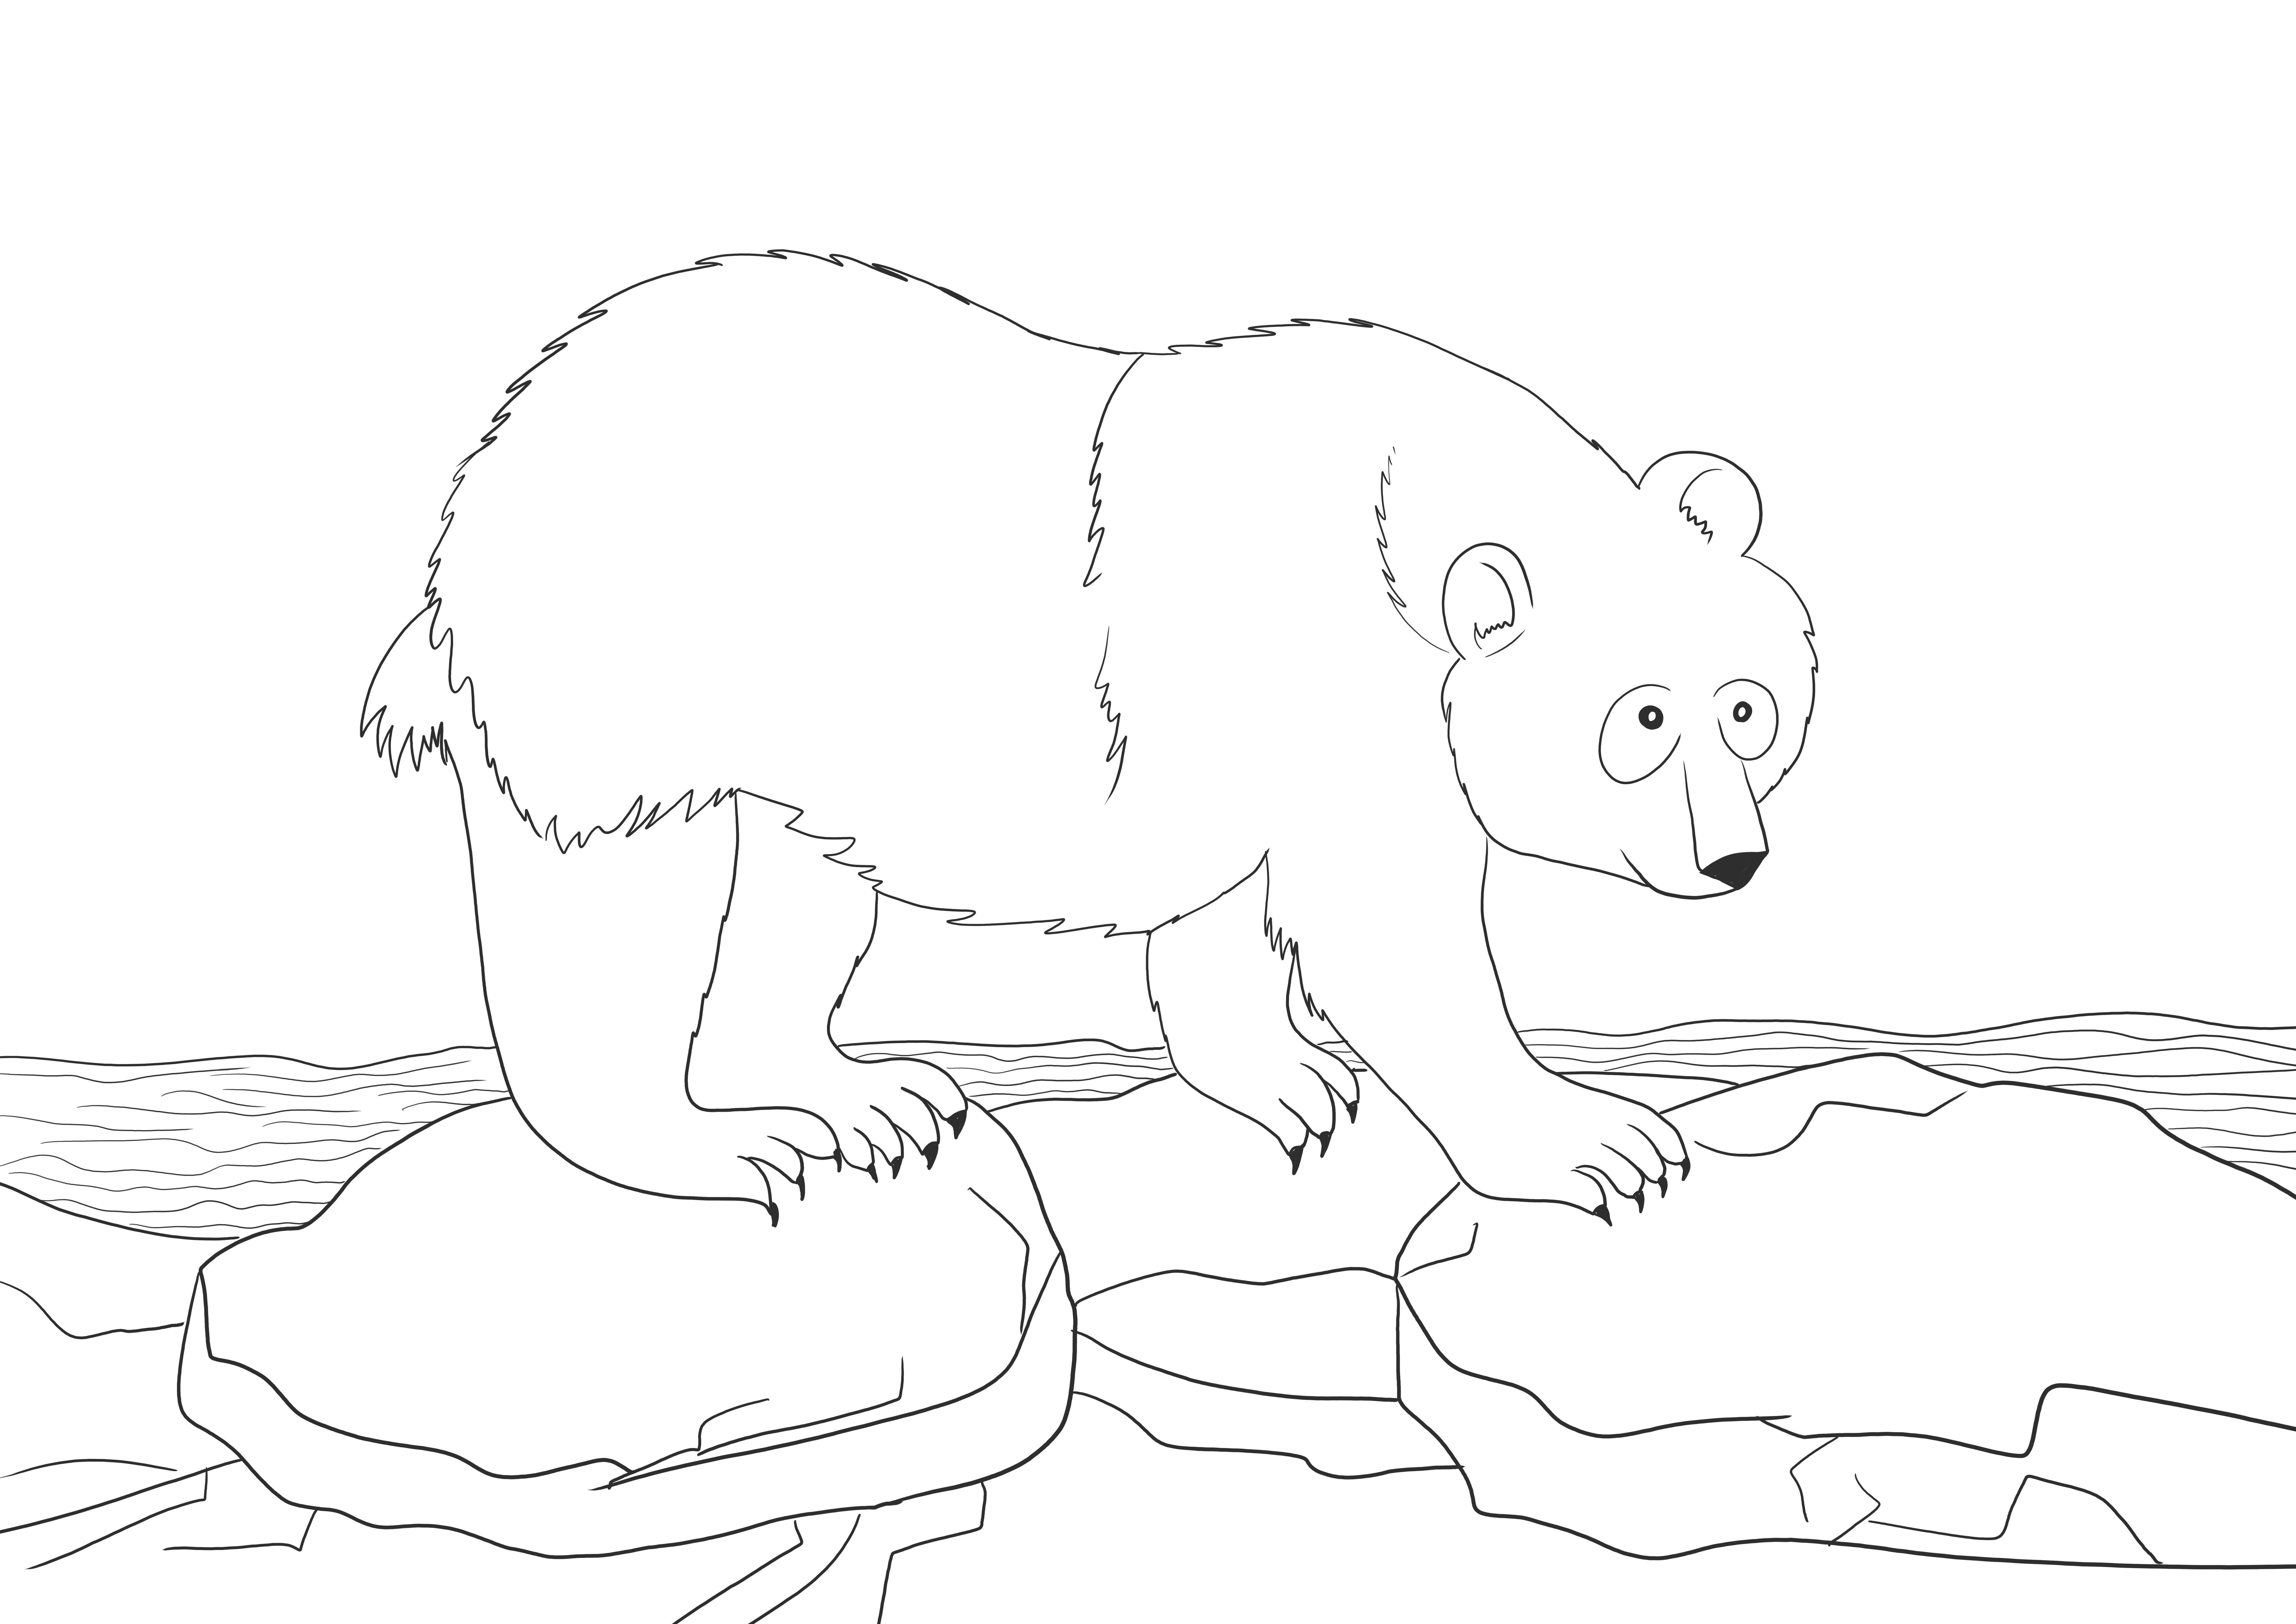 Ours polaire glissant sur la feuille imprimable sans glace à colorier